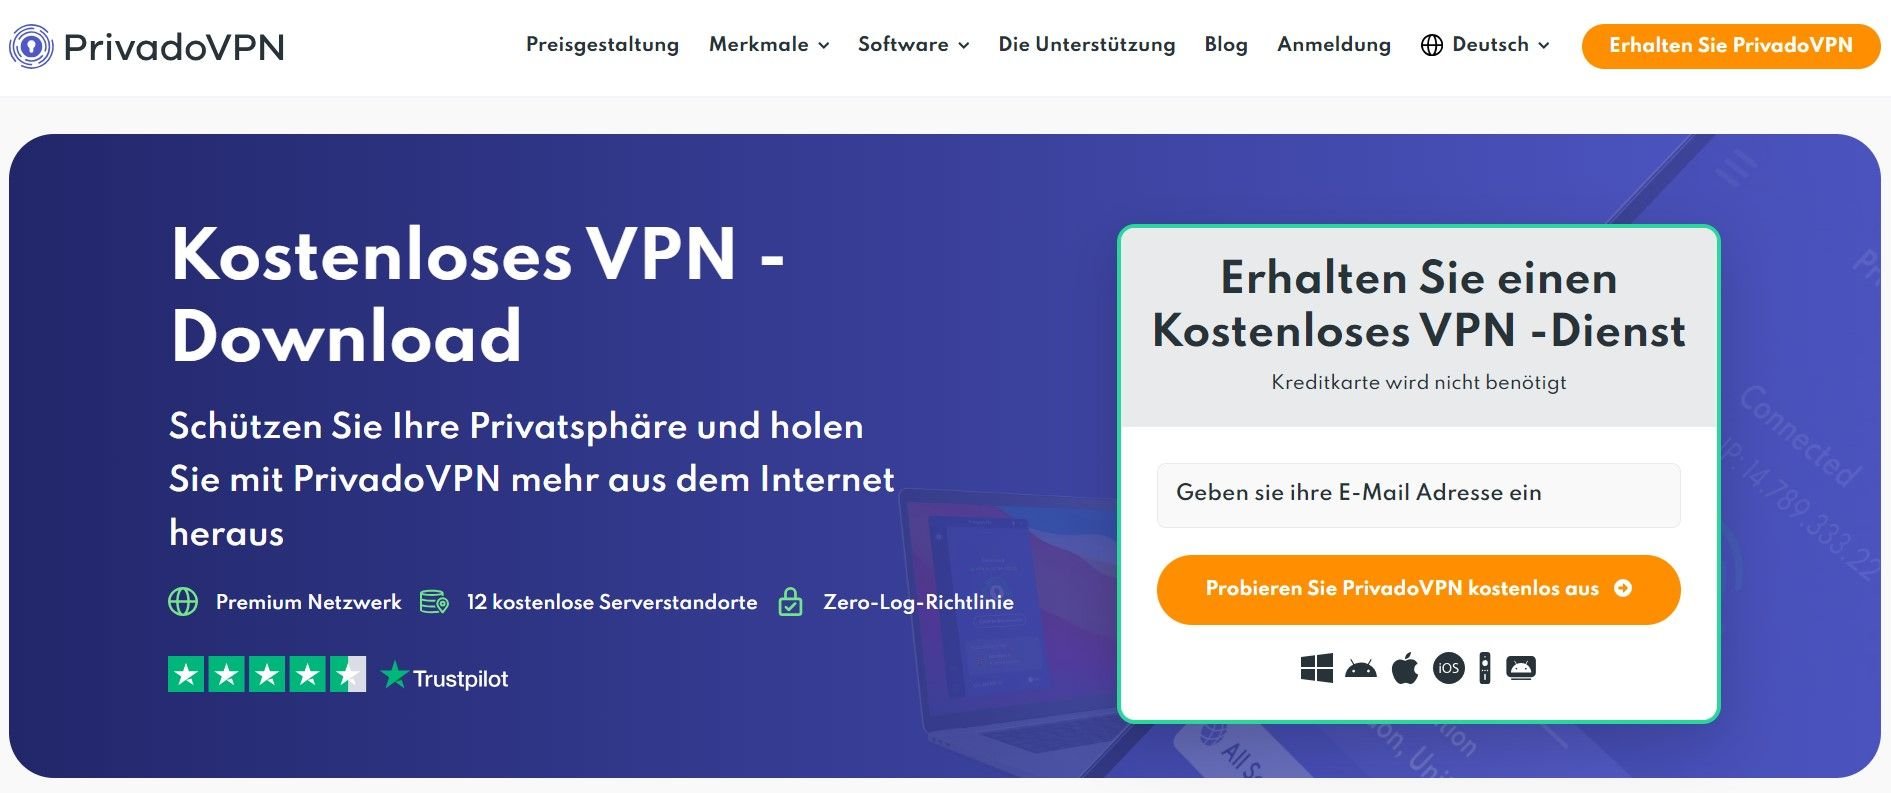 PrivadoVPN bestes kostenloses VPN Deutschland gratis